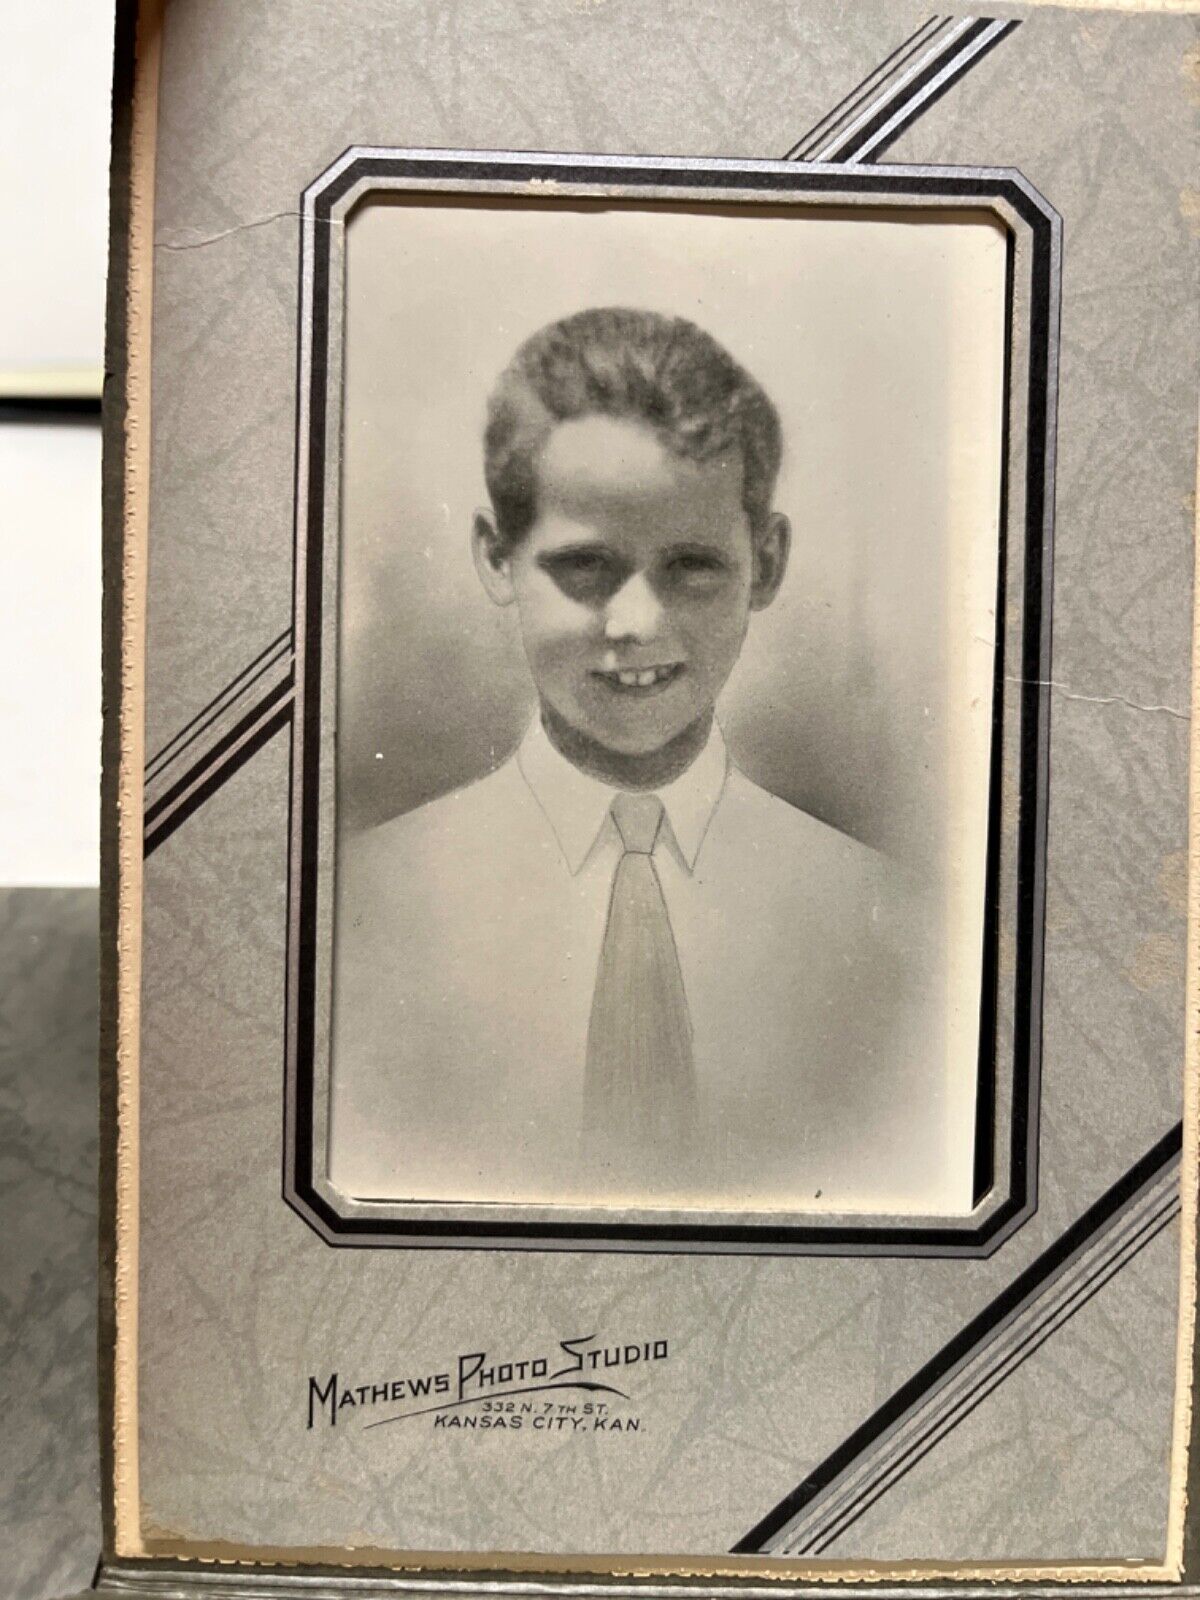 Vintage Black & White Photo, Matthews Photo Studio, Kansas City, Young boy